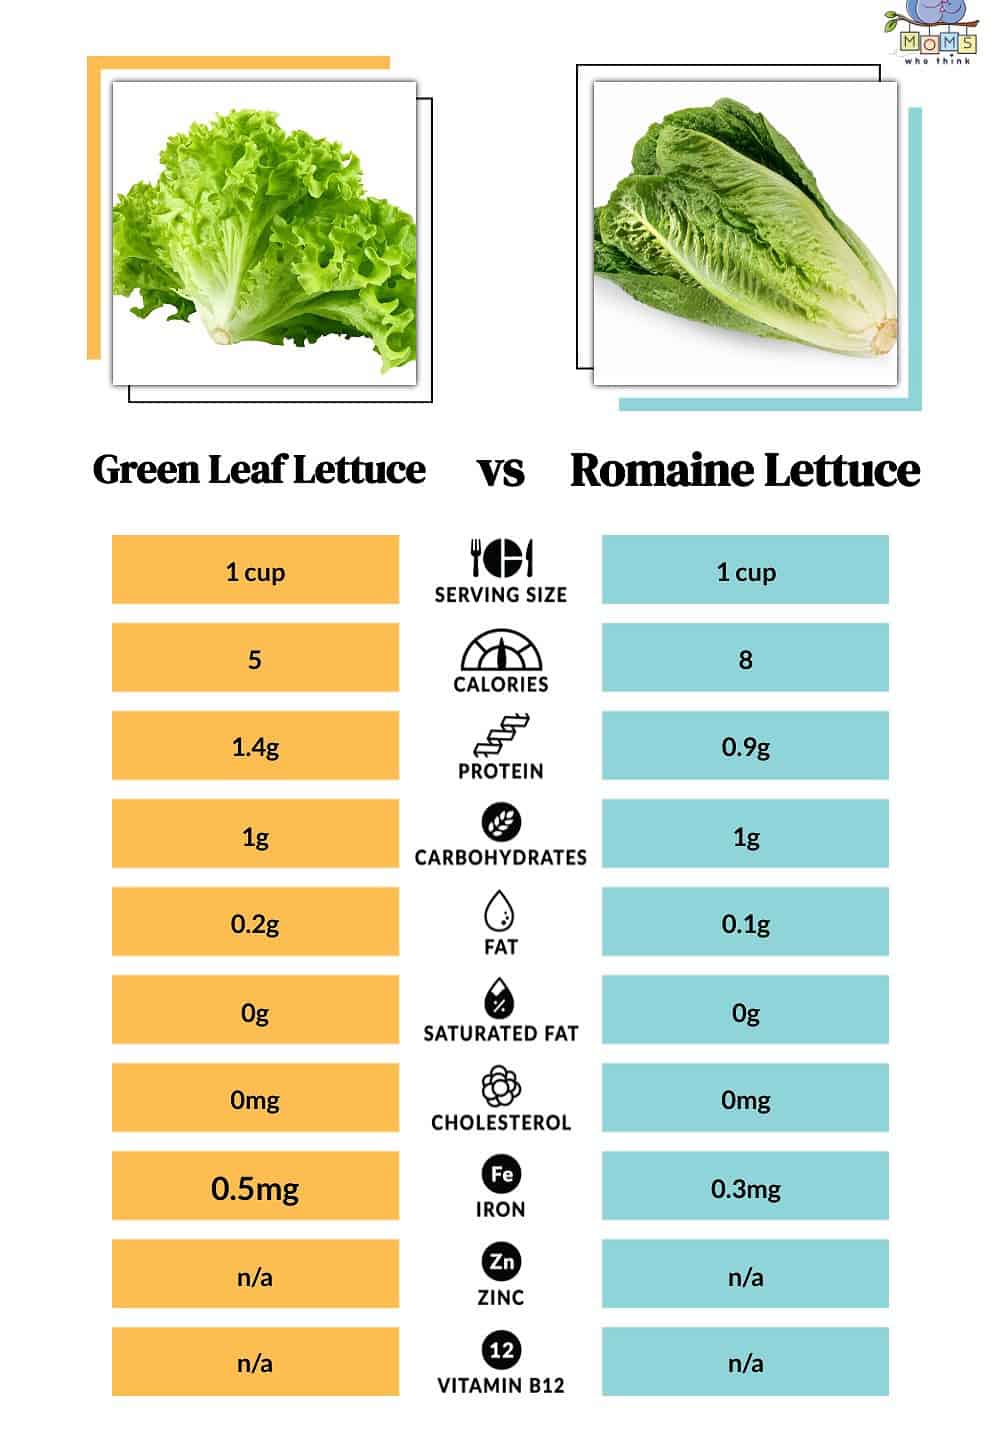 Green Leaf Lettuce vs Romaine Lettuce Nutritional Facts